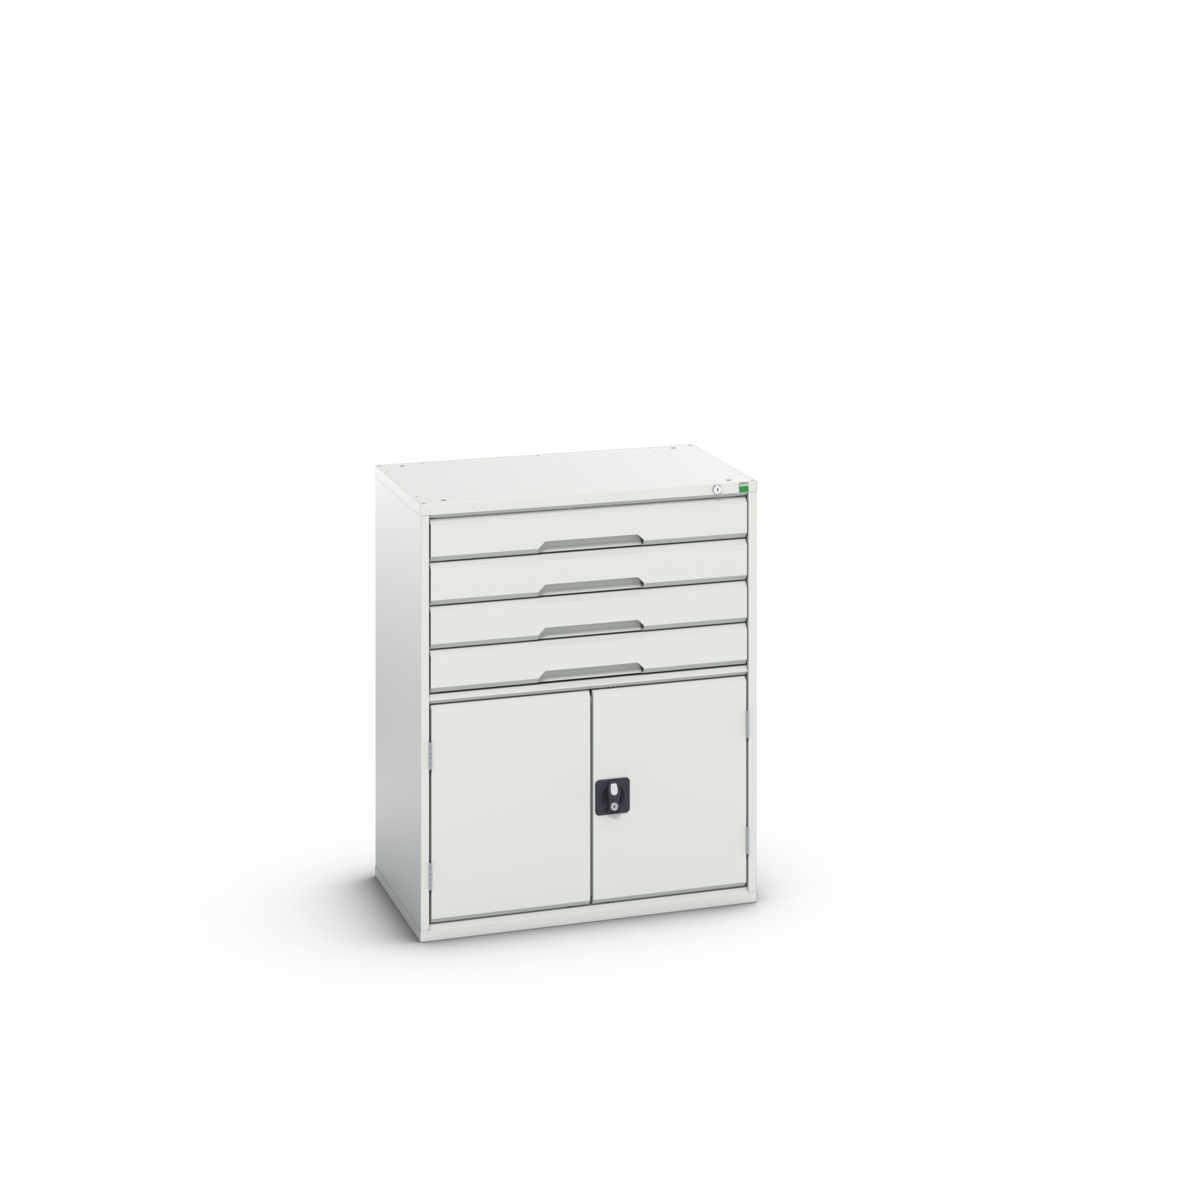 16925465.16 - verso drawer-door cabinet